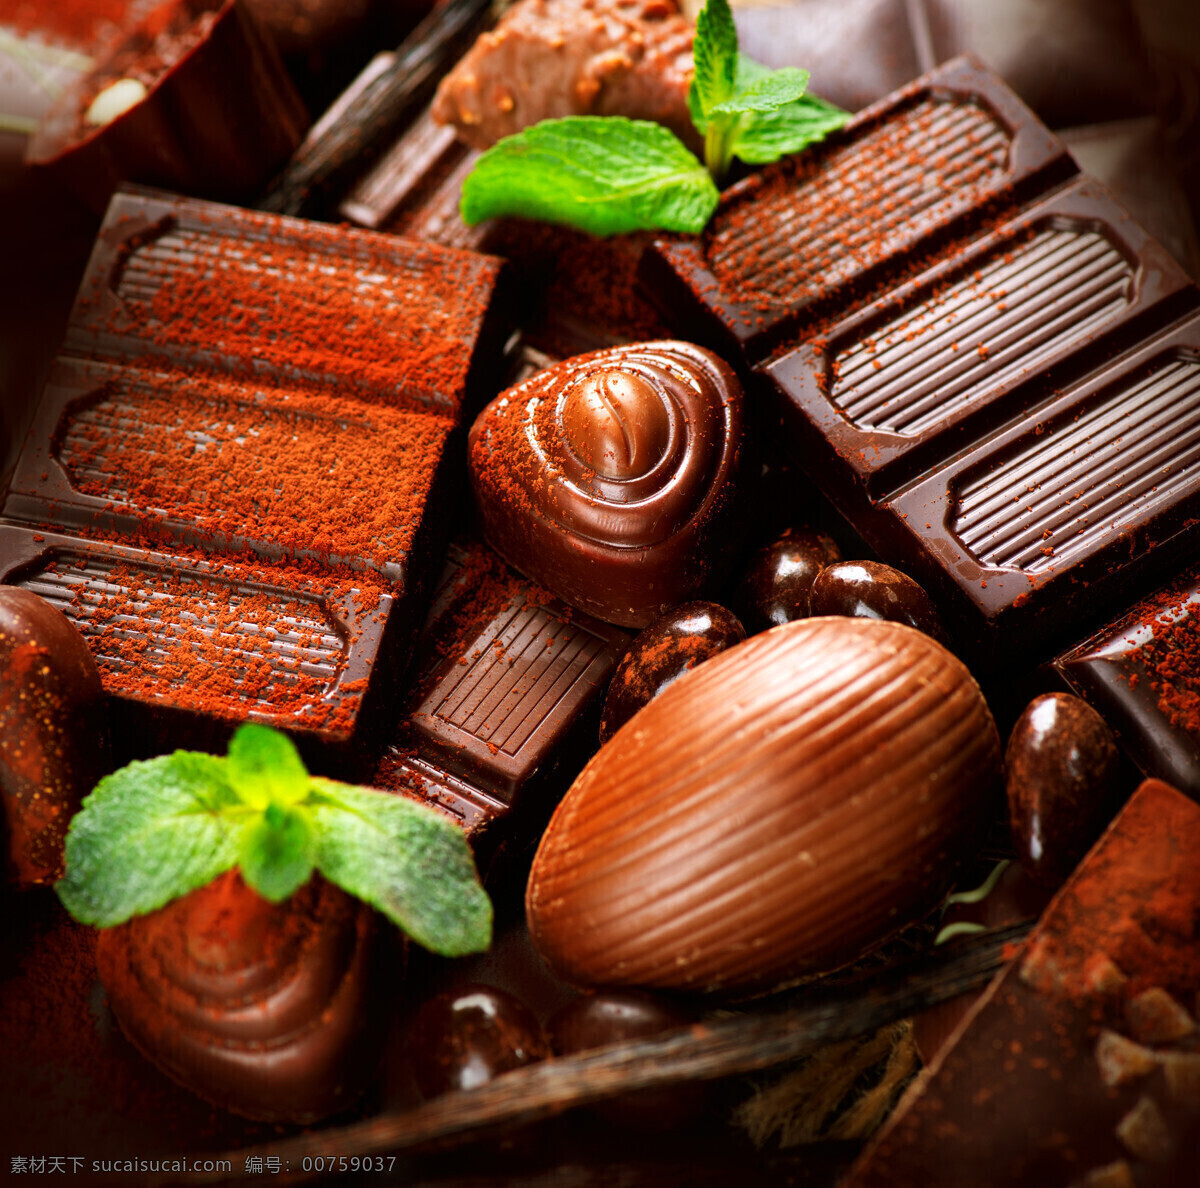 诱人 巧克力 牛奶巧克力 甜品 点心 食物原料 食材原料 餐饮美食 美食图片